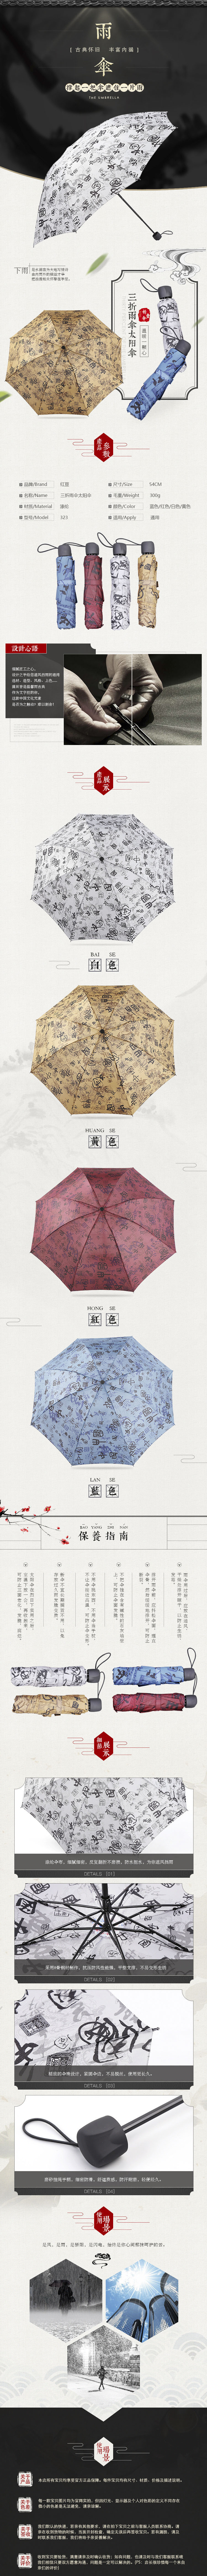 淘宝美工槭子生活百货，居家日用，雨伞作品